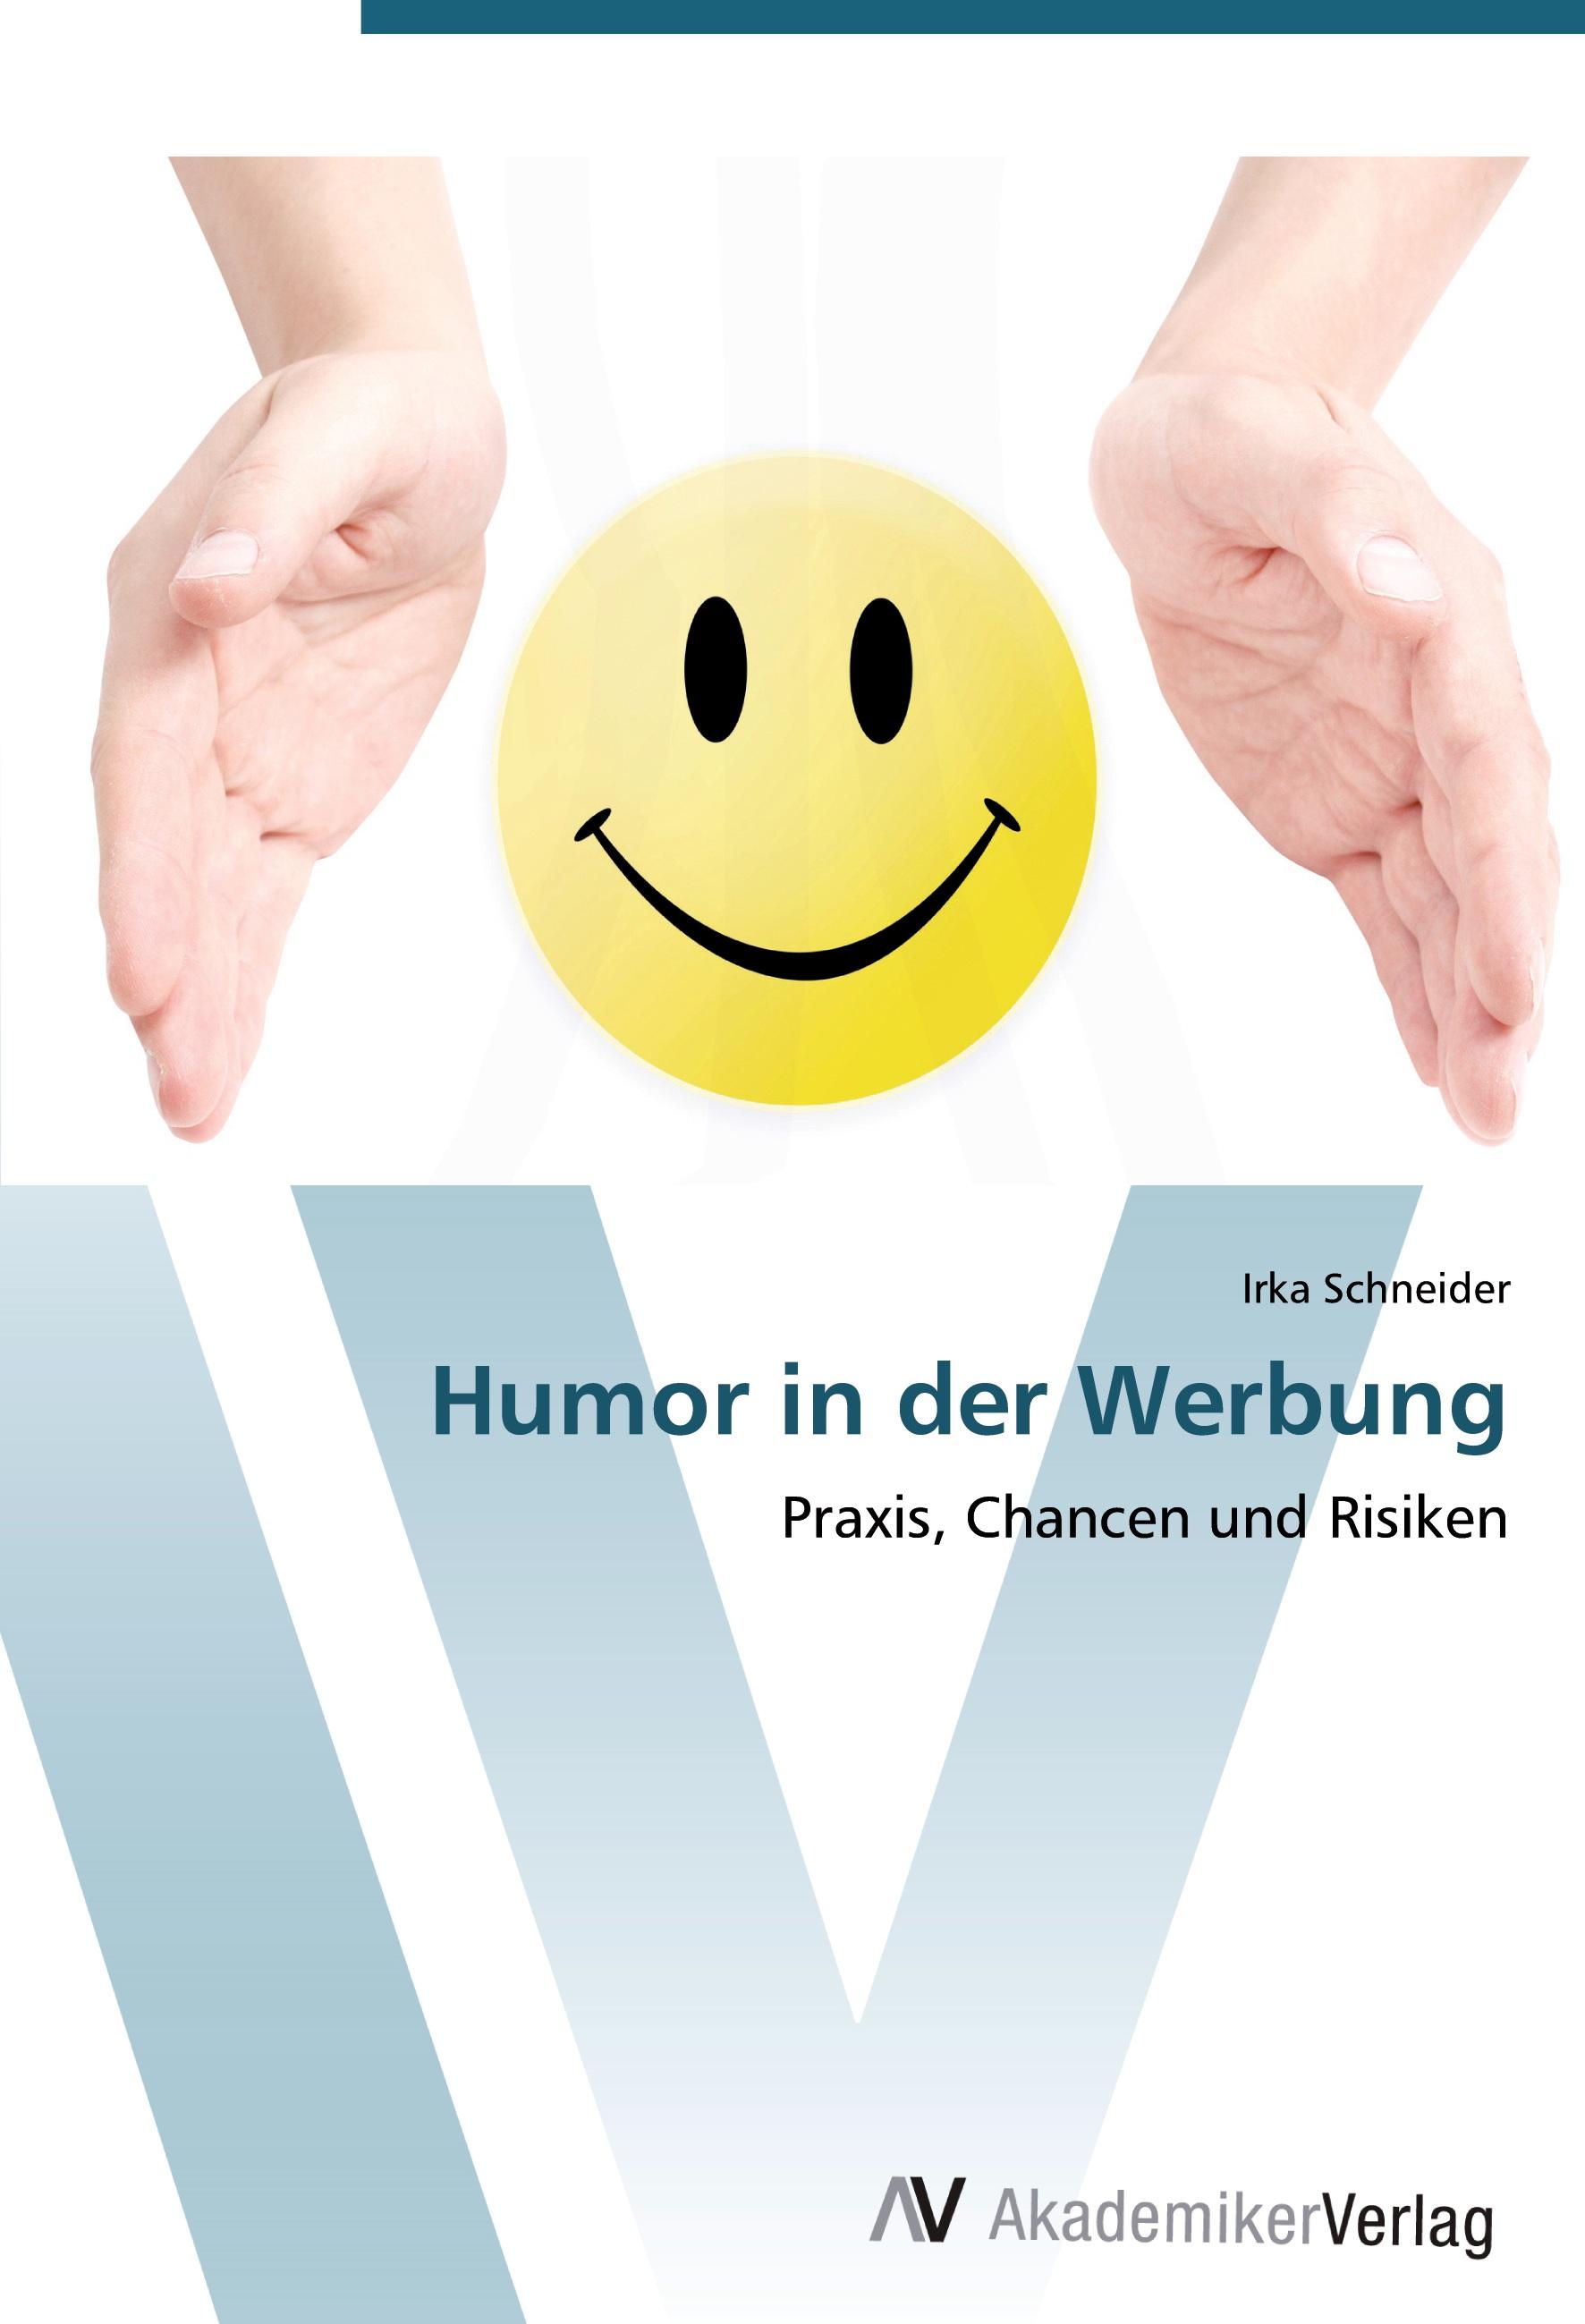 Humor in der Werbung - Irka Schneider